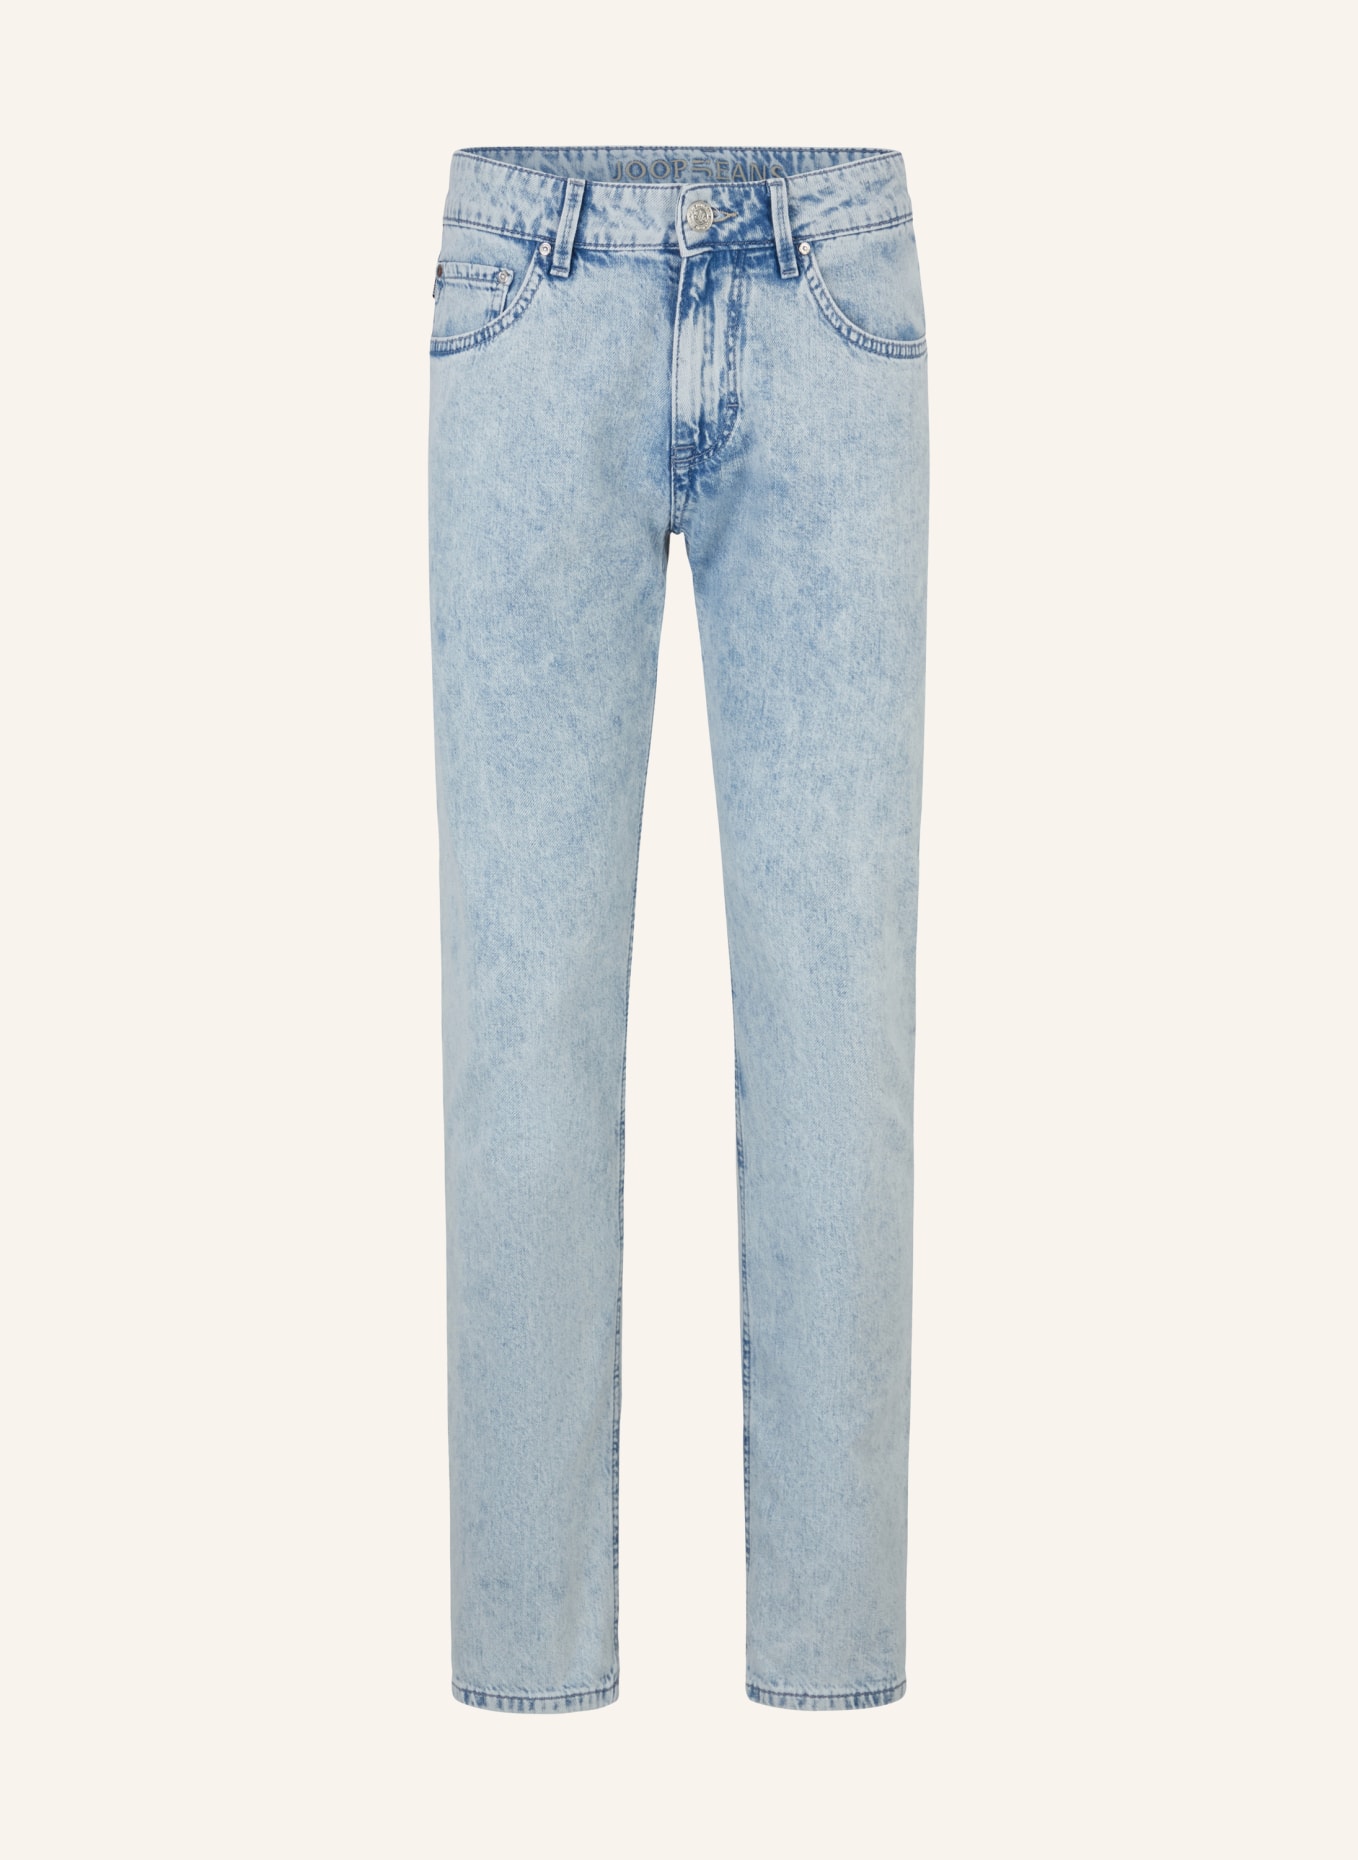 JOOP! JEANS Jeans Slim Fit, Farbe: AQUA-BLUE (Bild 1)